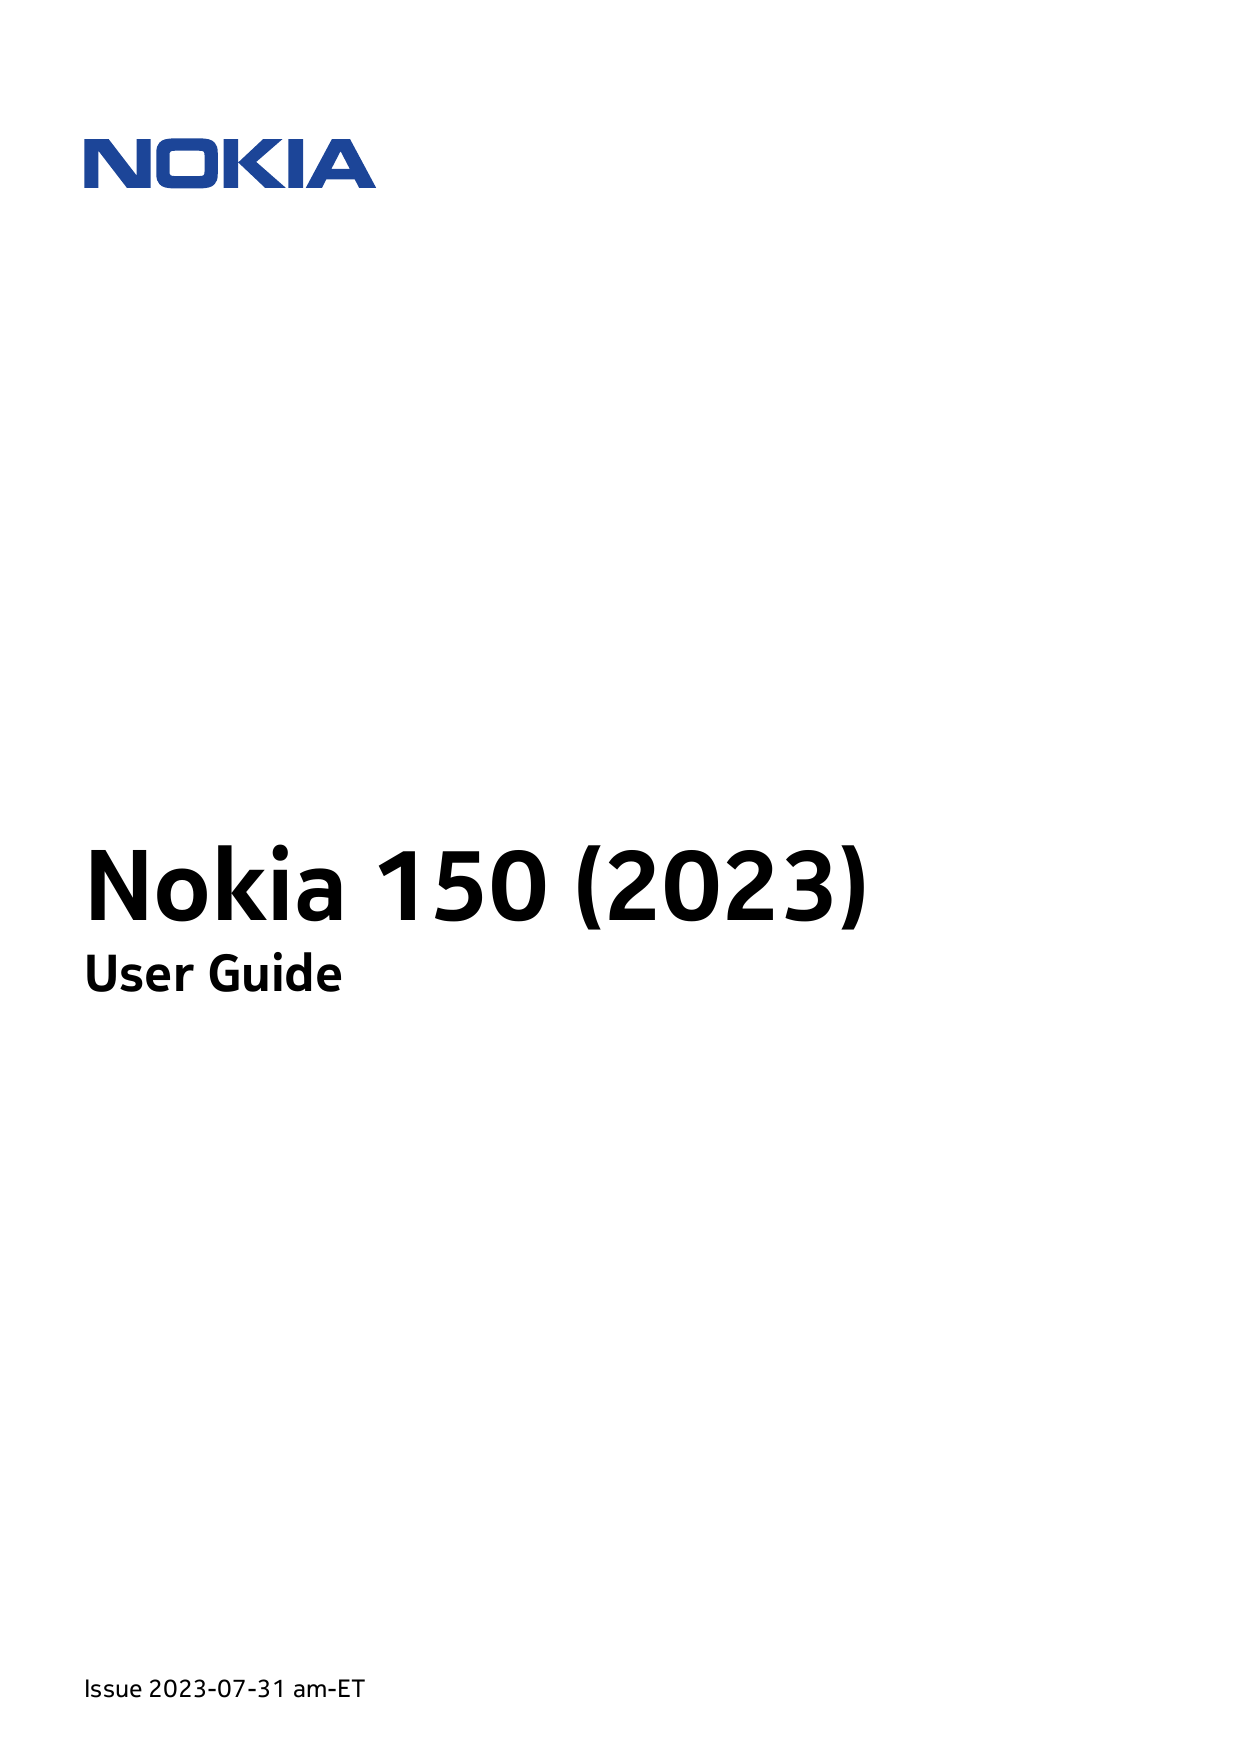 Nokia 150 (2023)User GuideIssue 2023-07-31 am-ET